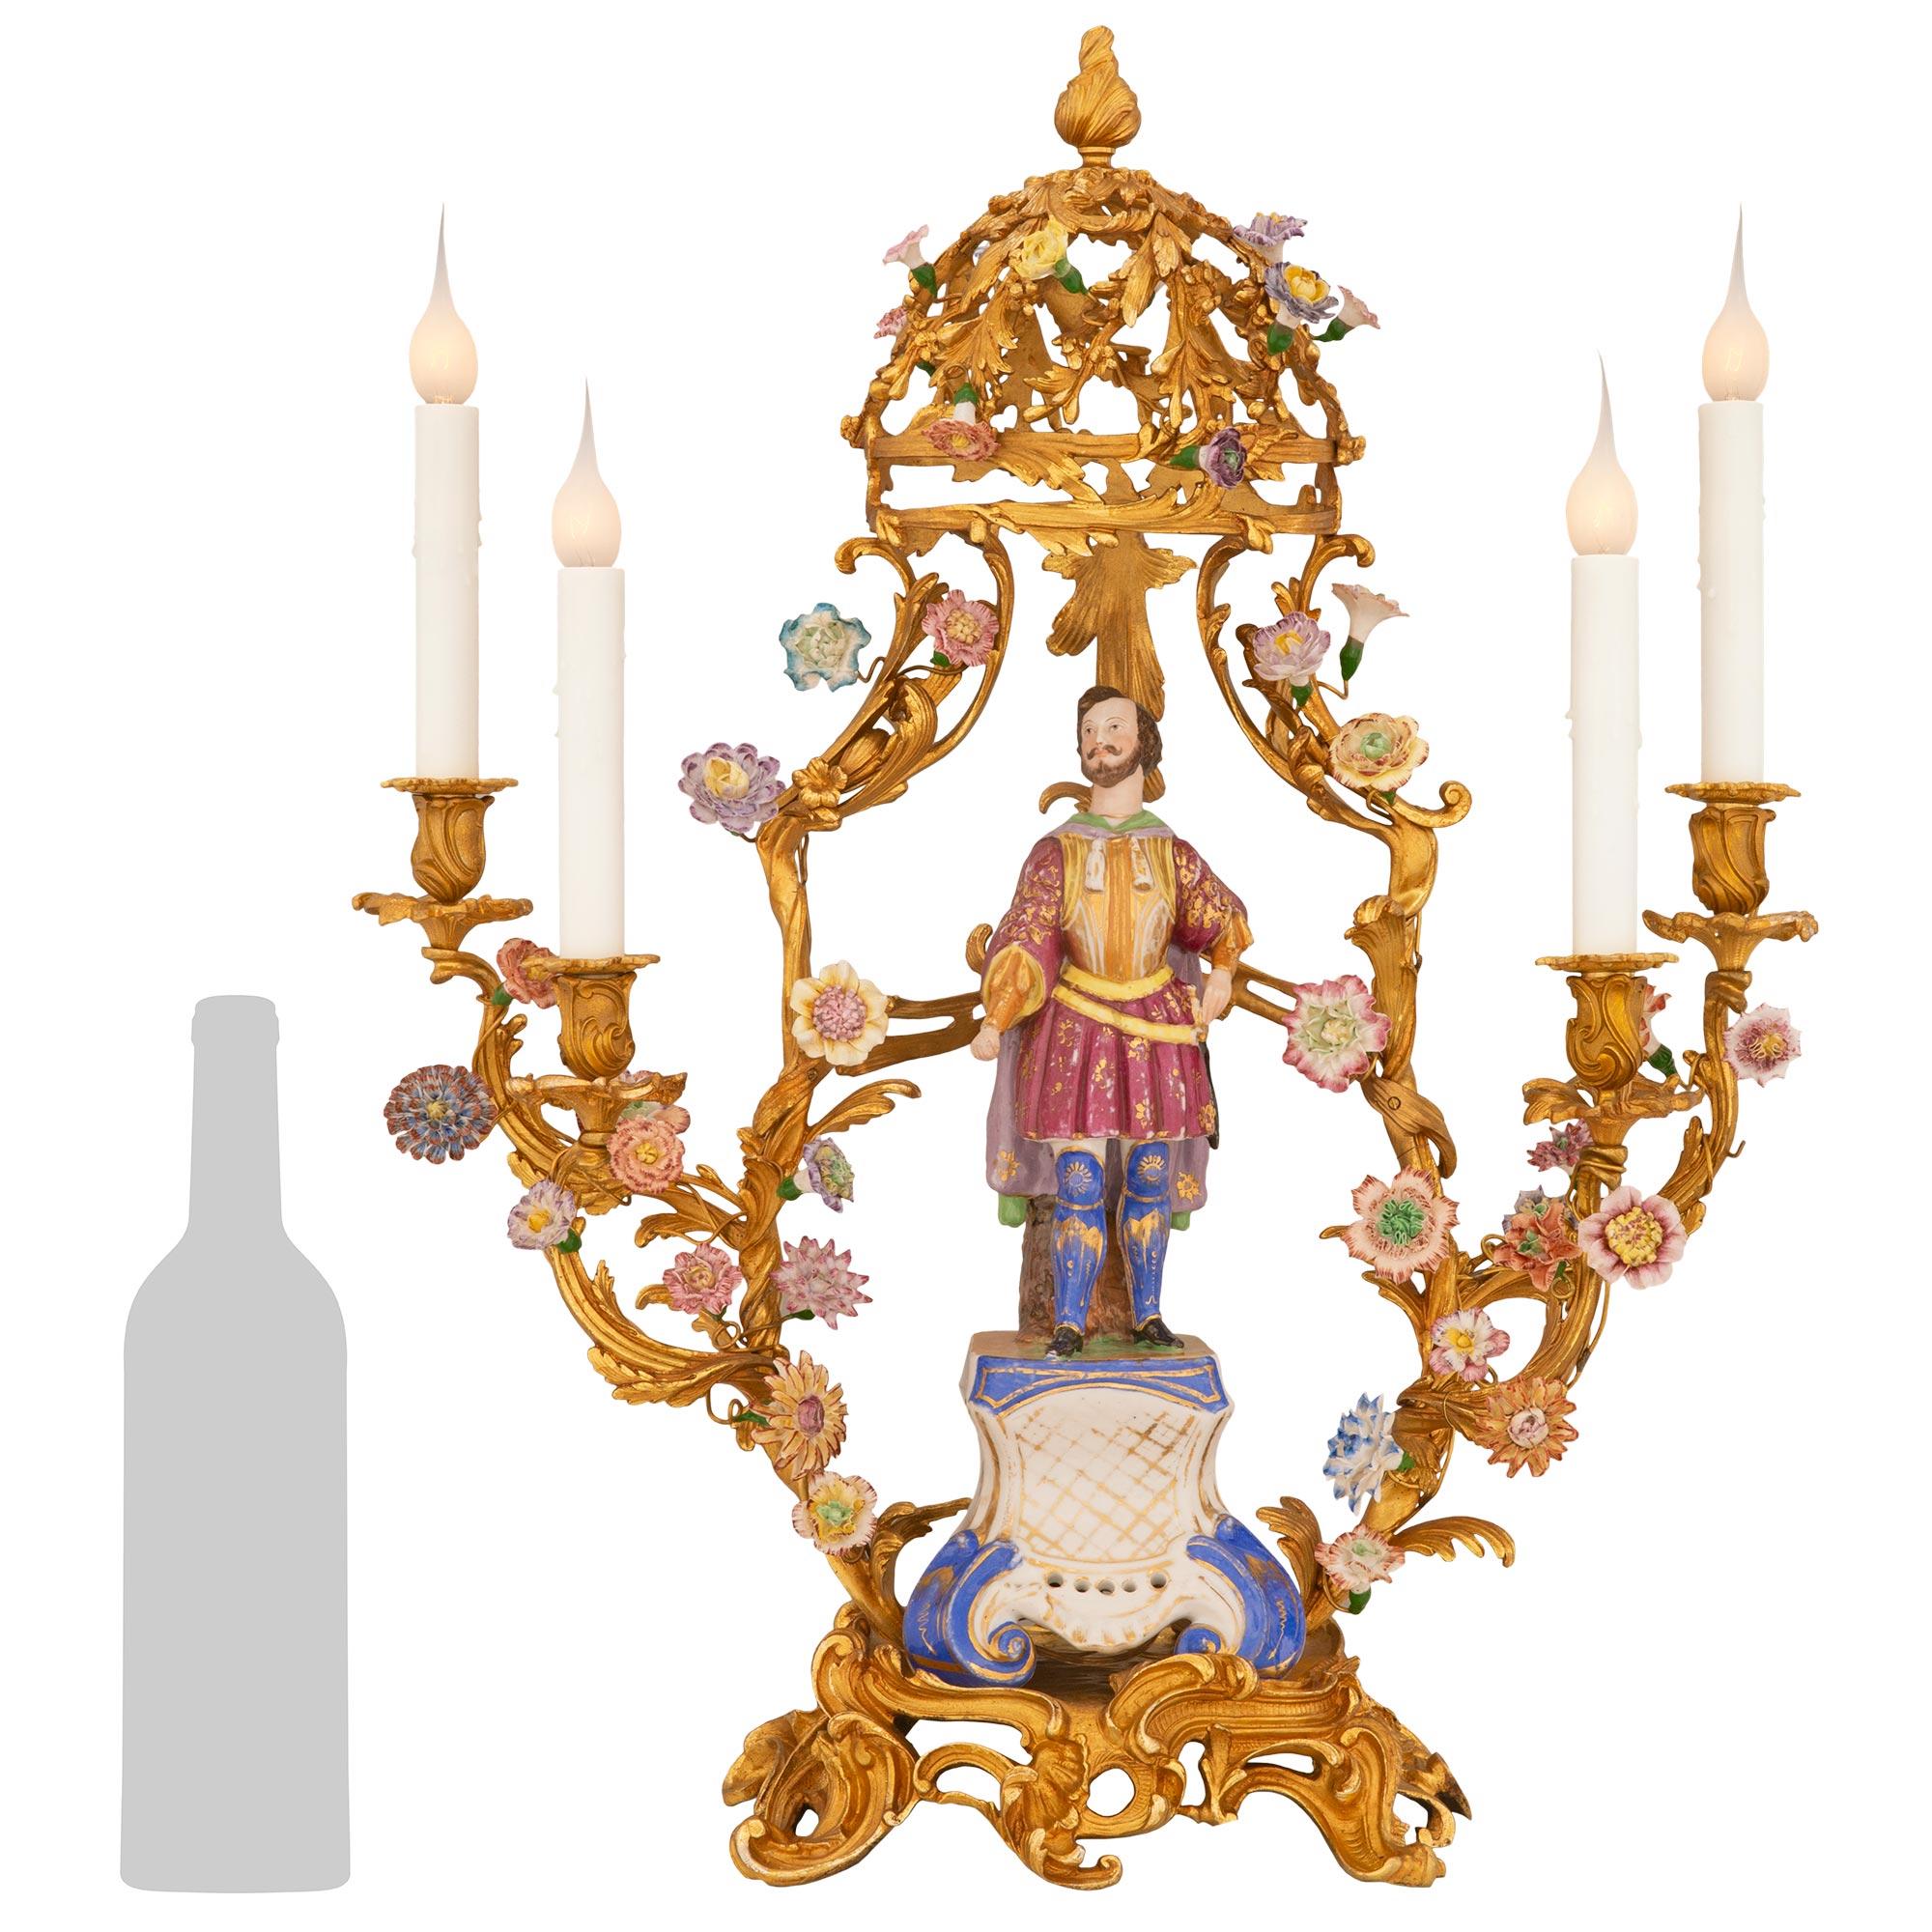 Une paire de lampes candélabres en bronze doré et en porcelaine de Saxe du début du siècle, extrêmement décoratives. Chaque lampe à quatre bras est surmontée d'une belle base en bronze doré percée, ornée de merveilleux motifs de feuillage et de